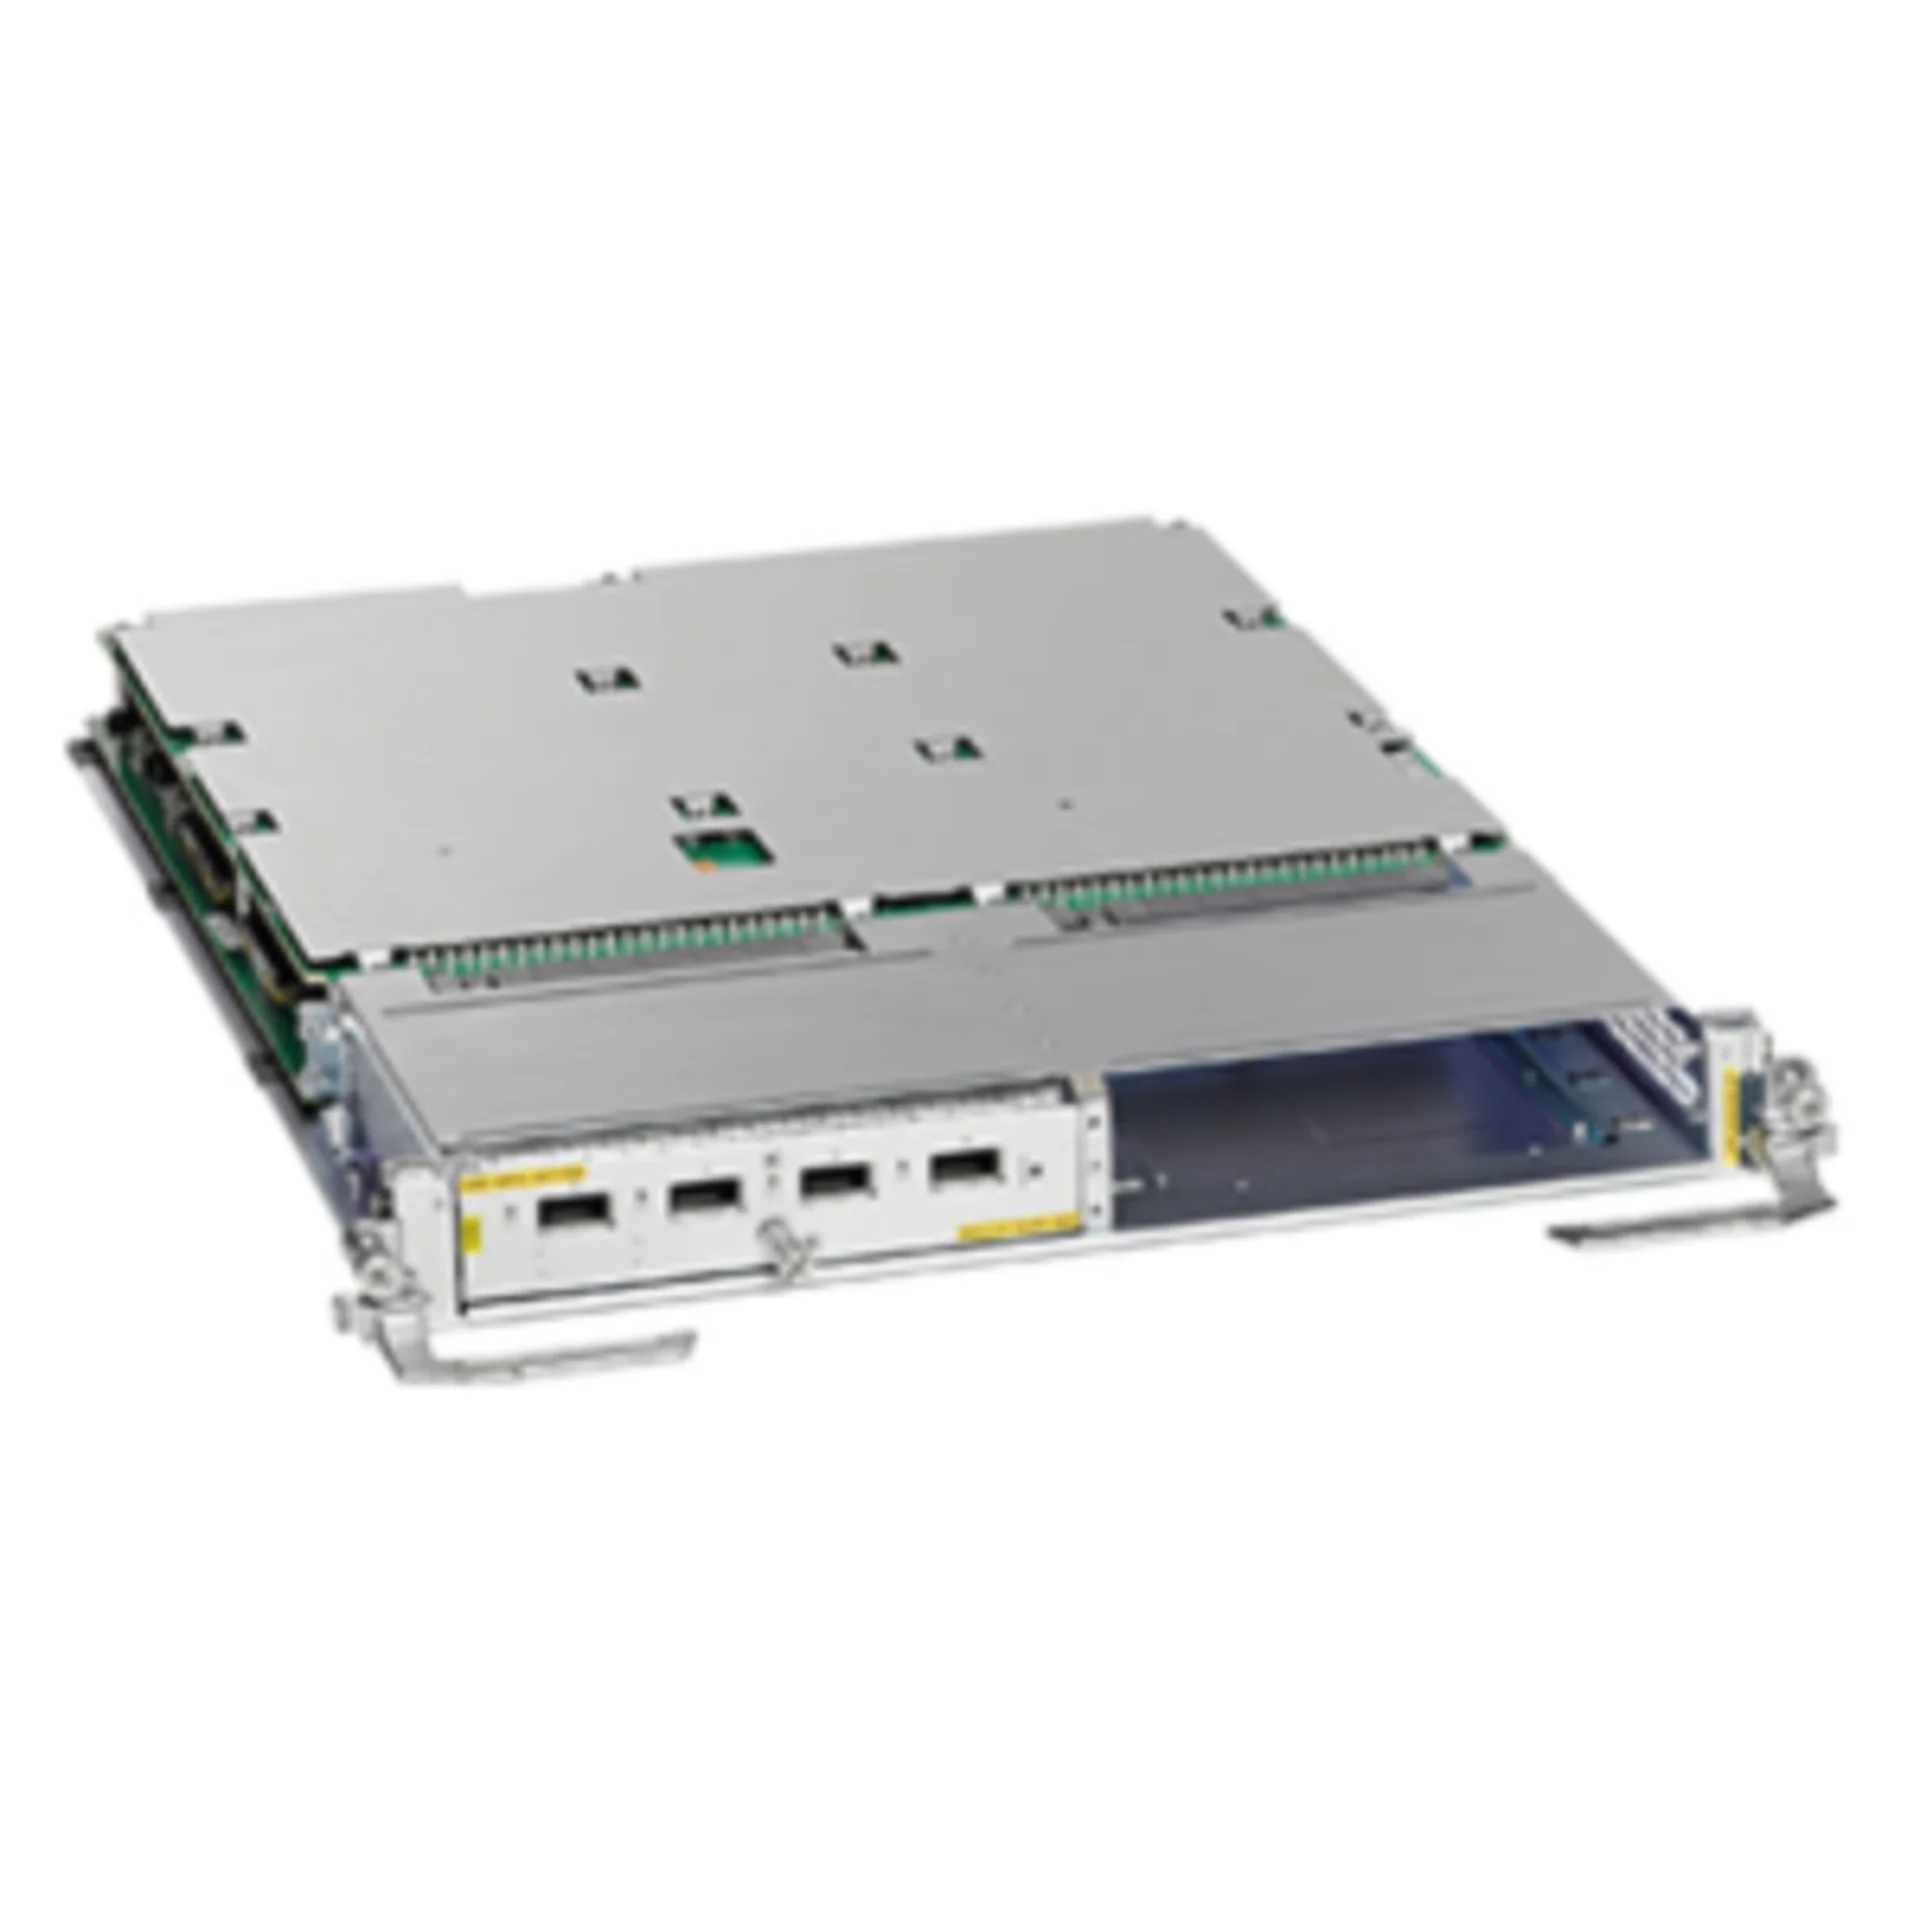 Cisco A9K-MOD160-TR - Модуль для маршрутизатора Cisco ASR9000, 2 слота для модулей A9K-MPA, пропусканя способность 160Гбит/с, Transport Optimized купить в Казани 	Комплектация:	- в комплектацию не вкходят MPA-платы, заказываются дополнительно	Маршрутизаторы Cisc